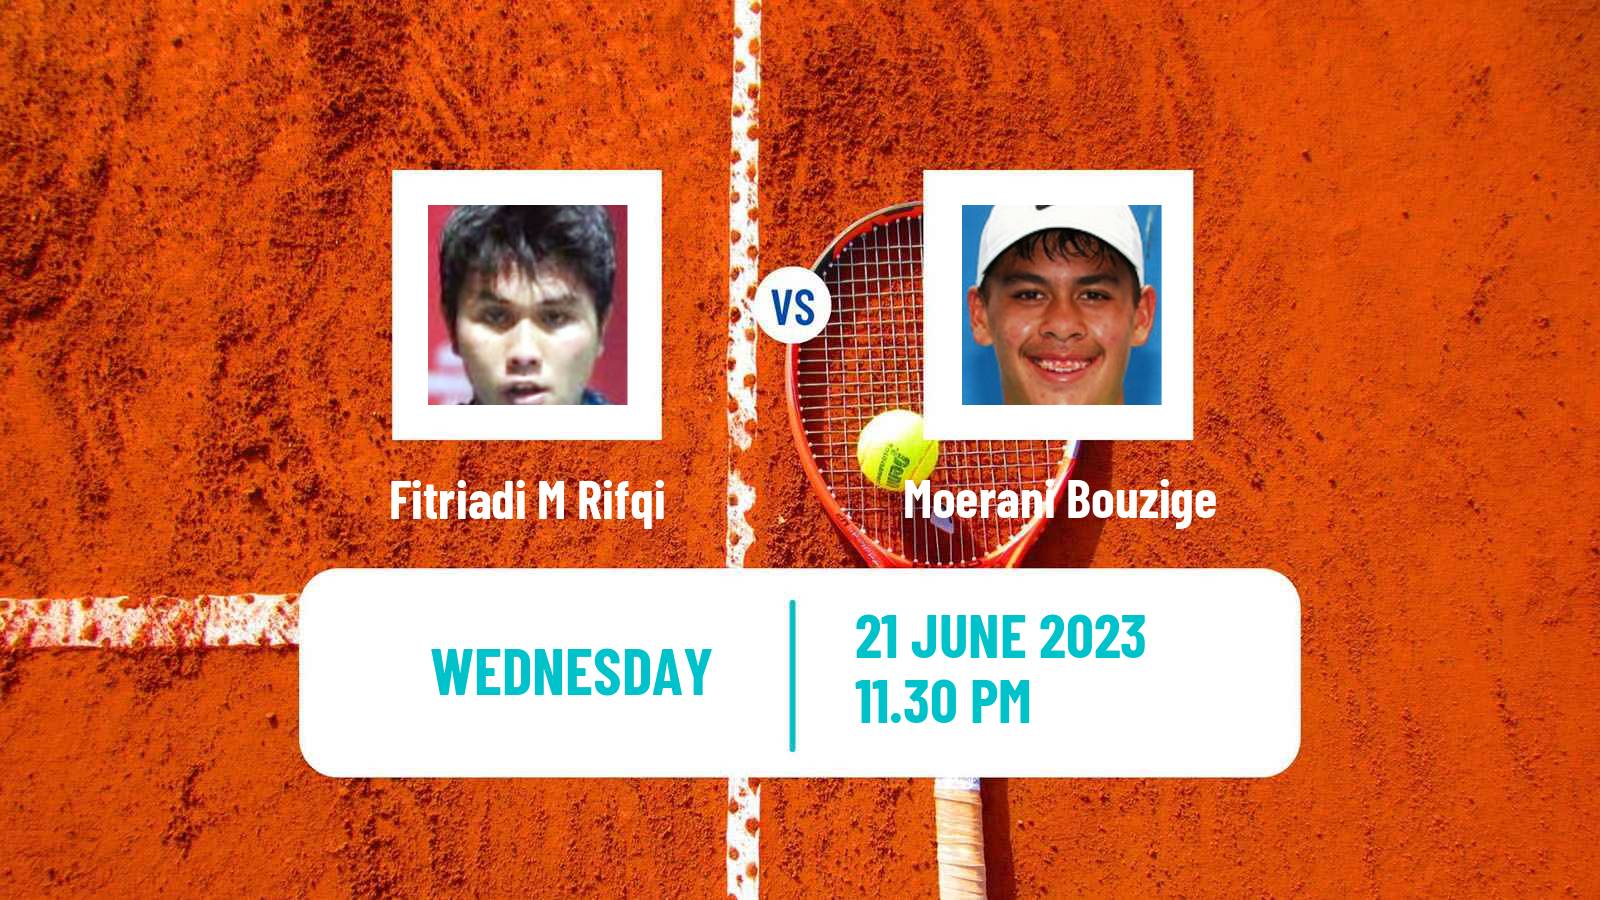 Tennis ITF M15 Jakarta 4 Men M Rifqi Fitriadi - Moerani Bouzige